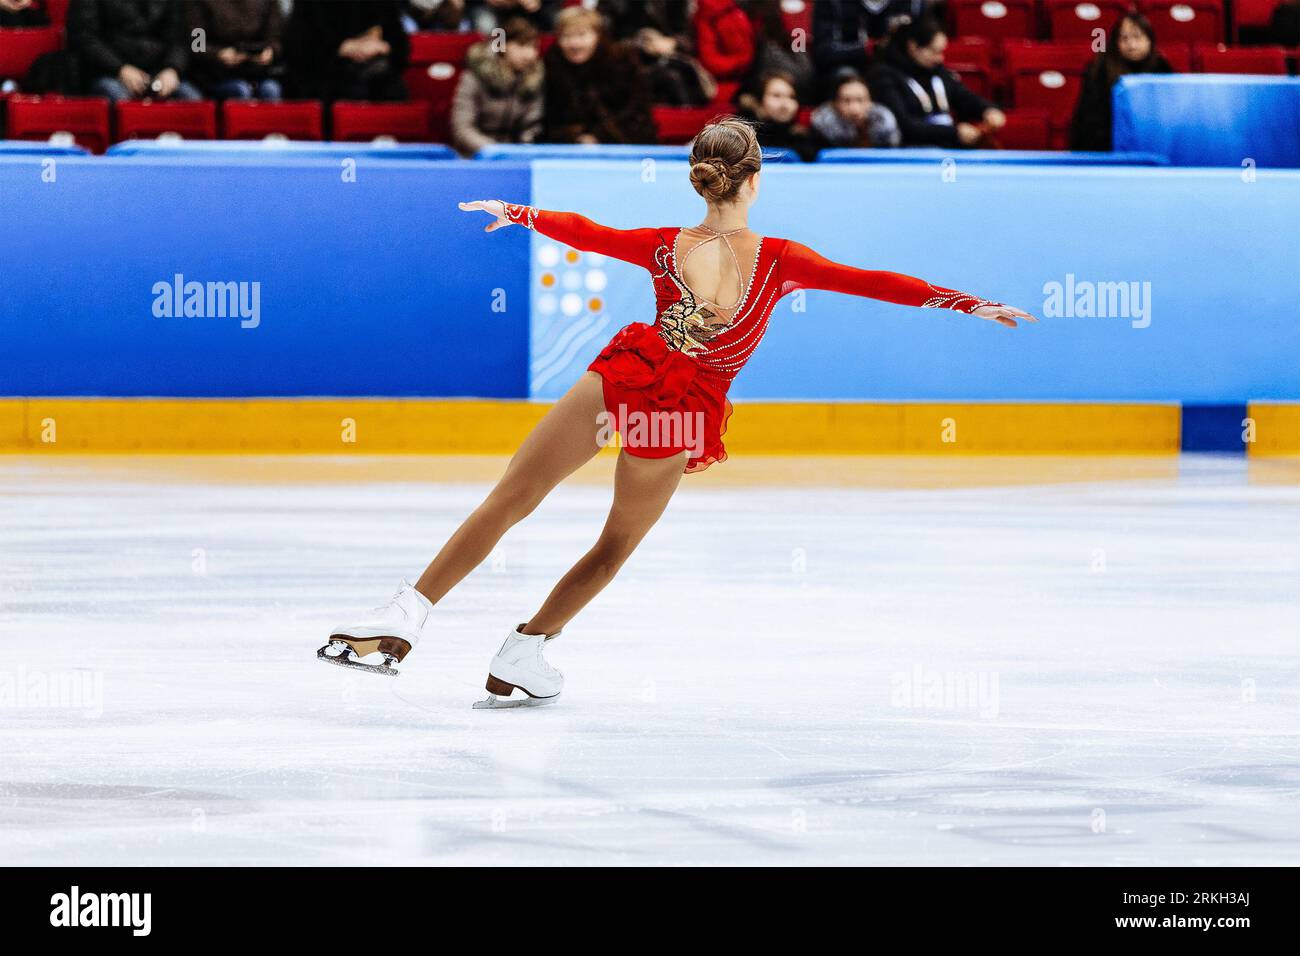 Eiskunstlauf Single, Rückenmädchen Figur Eiskunstlauf in rotem Kleid Stockfoto